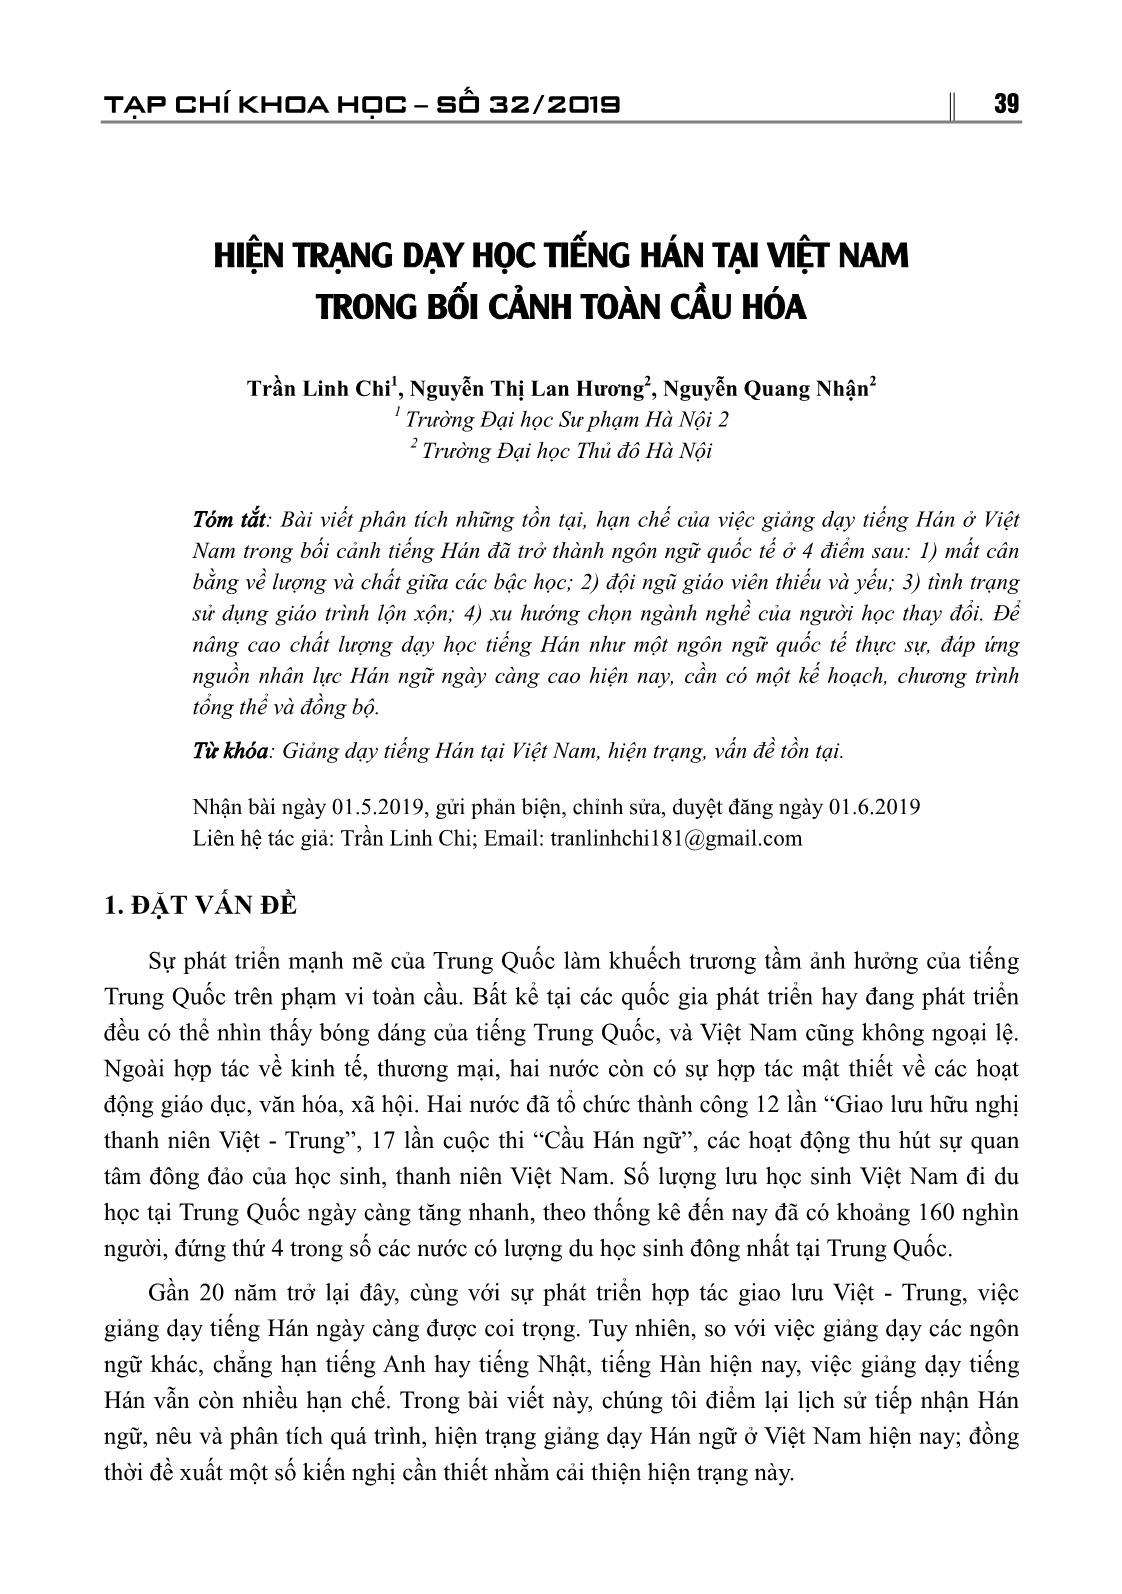 Hiện trạng dạy học tiếng Hán tại Việt Nam trong bối cảnh toàn cầu hóa trang 1